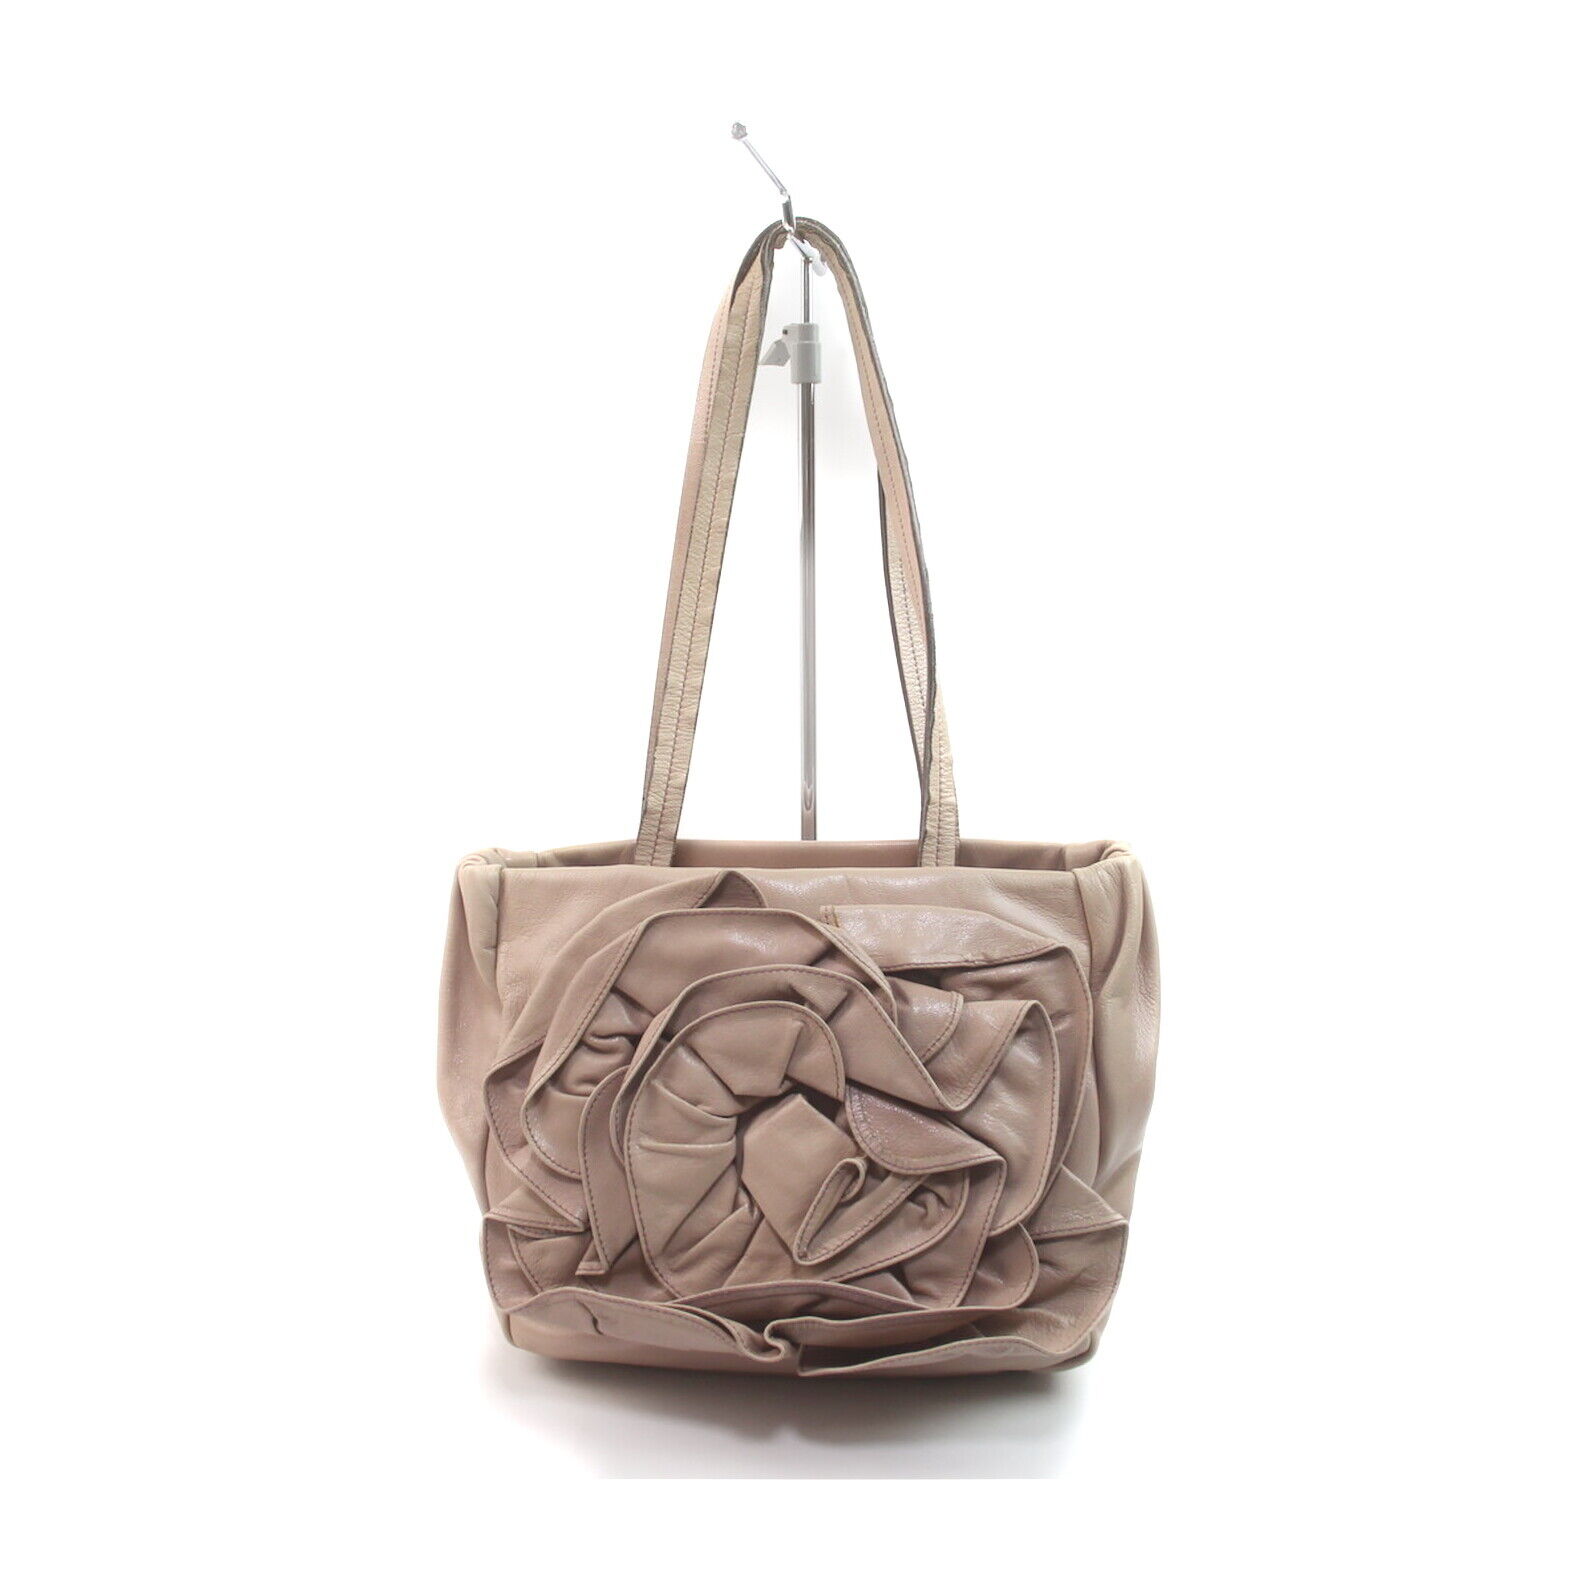 Yves Saint Laurent Shoulder Bag Flower Tote Bag Pinks Leather 1727172